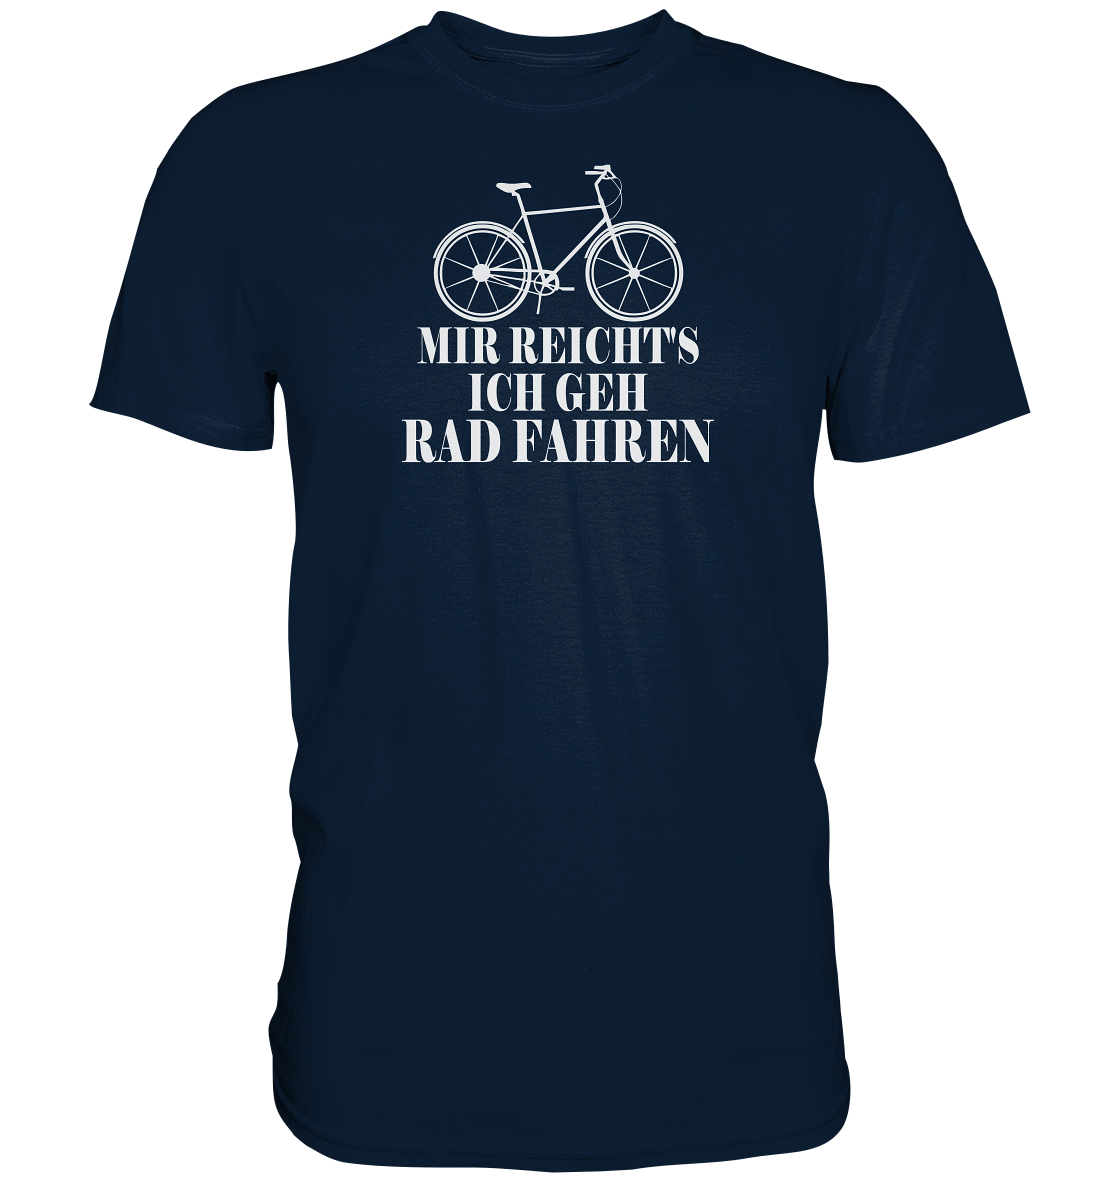 Mir reichts, ich geh Rad fahren - Premium unisex Shirt